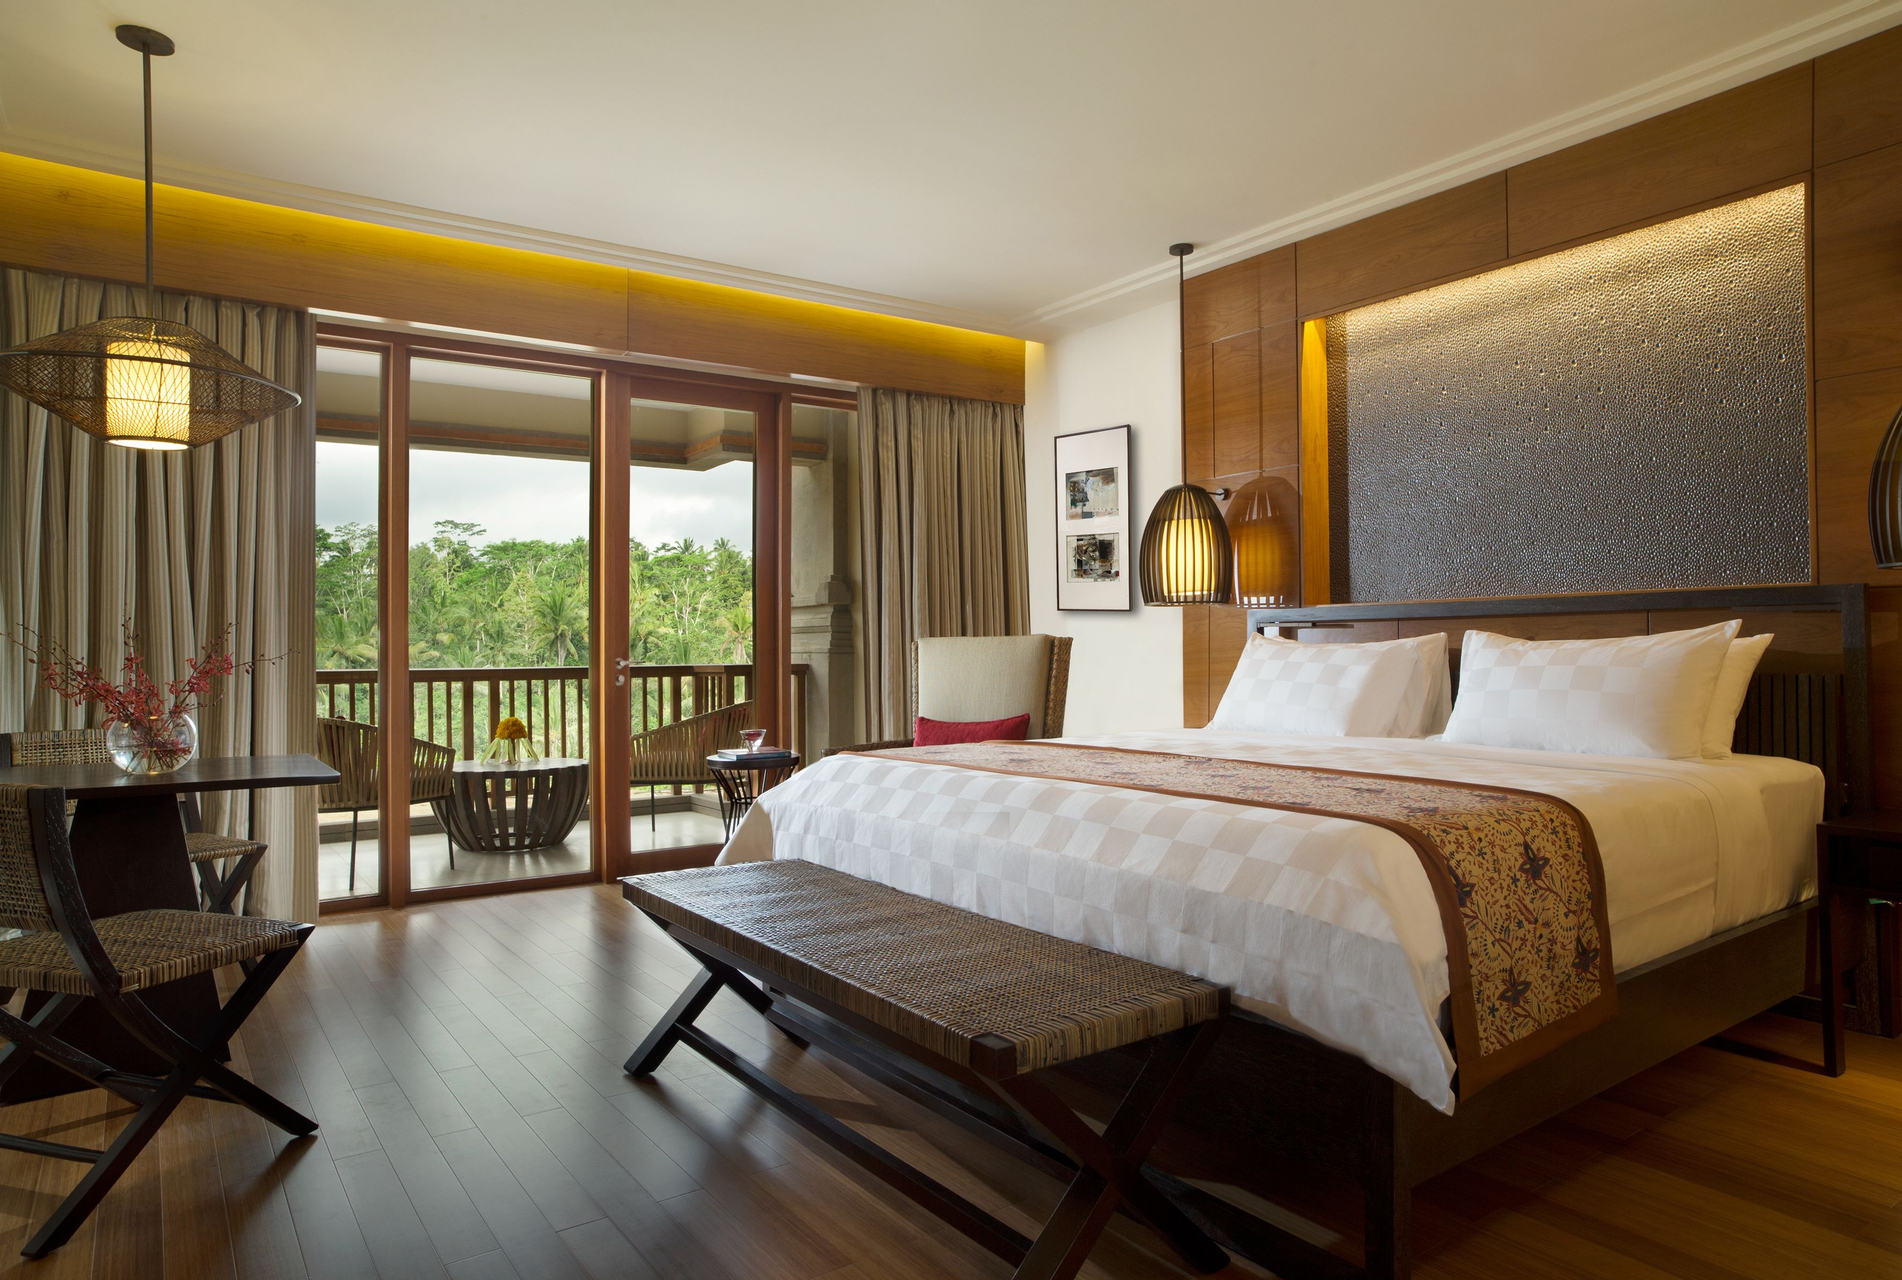 Bedroom 5, Padma Resort Ubud, Gianyar